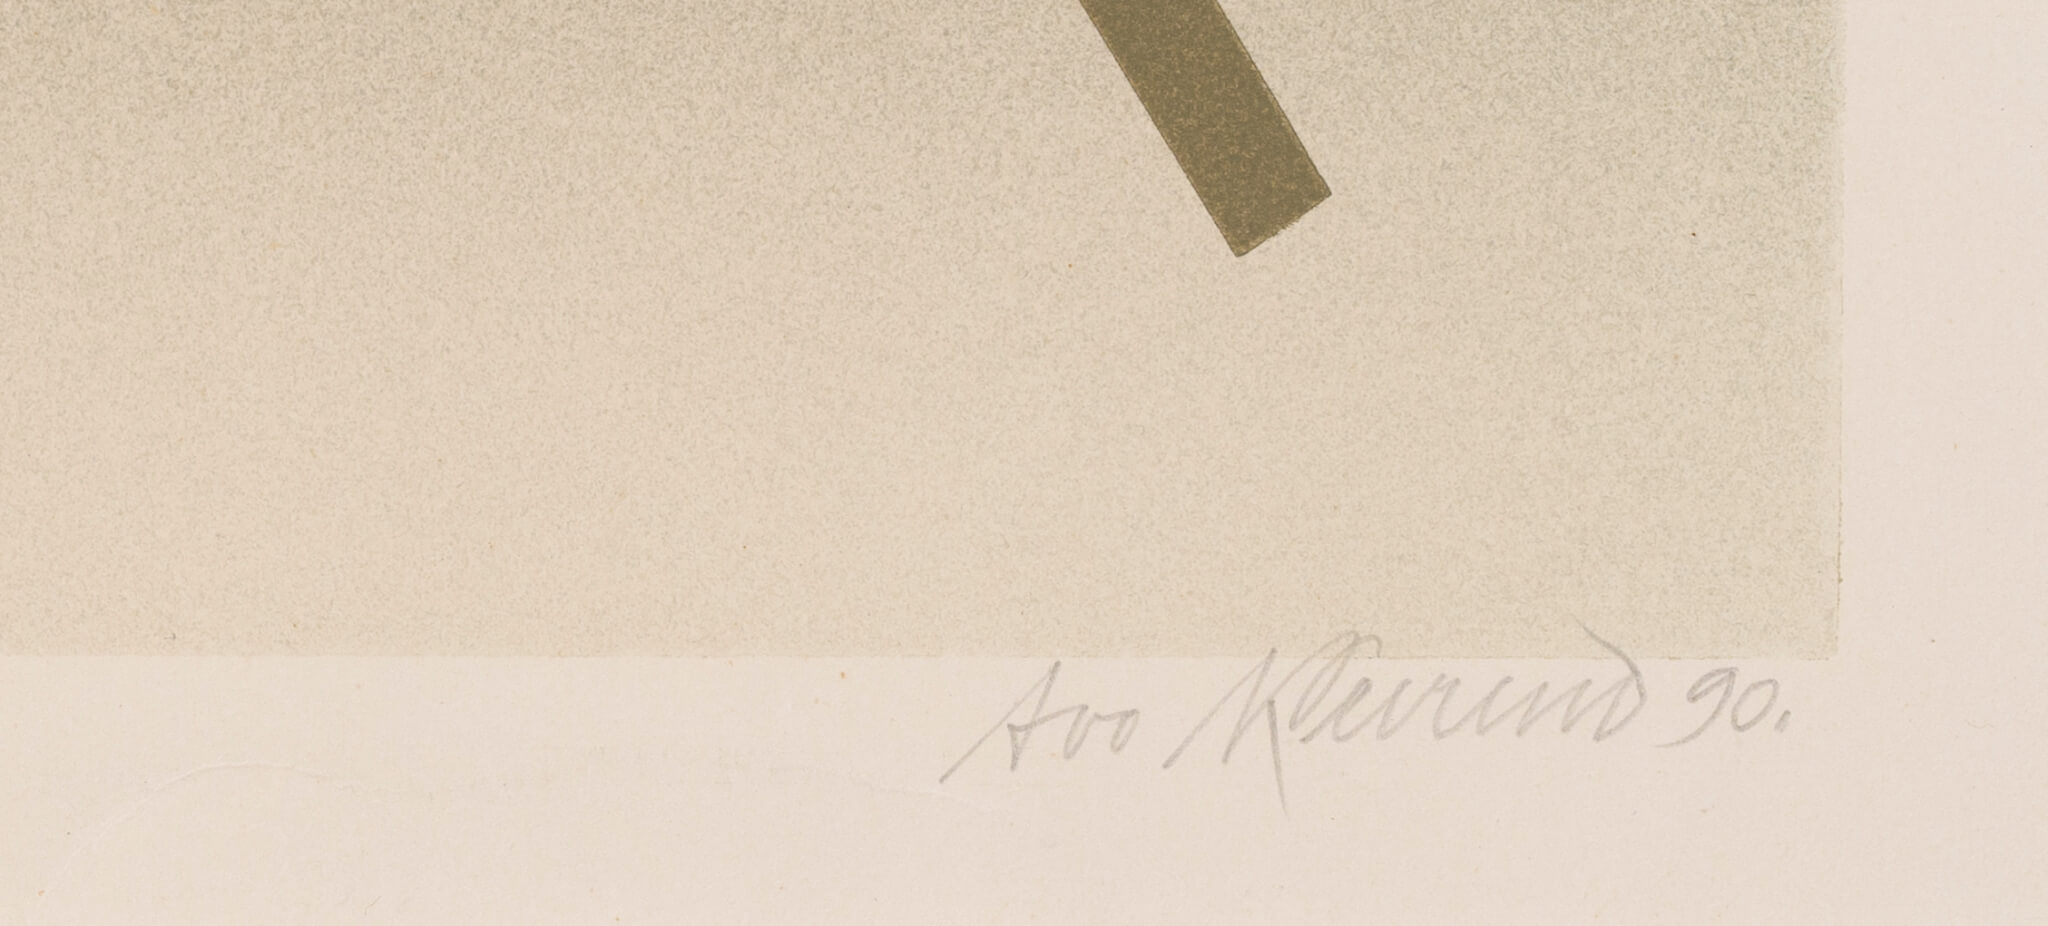 Avo Keerend “Ühendus IV”, 1990. 57 x 84 cm.